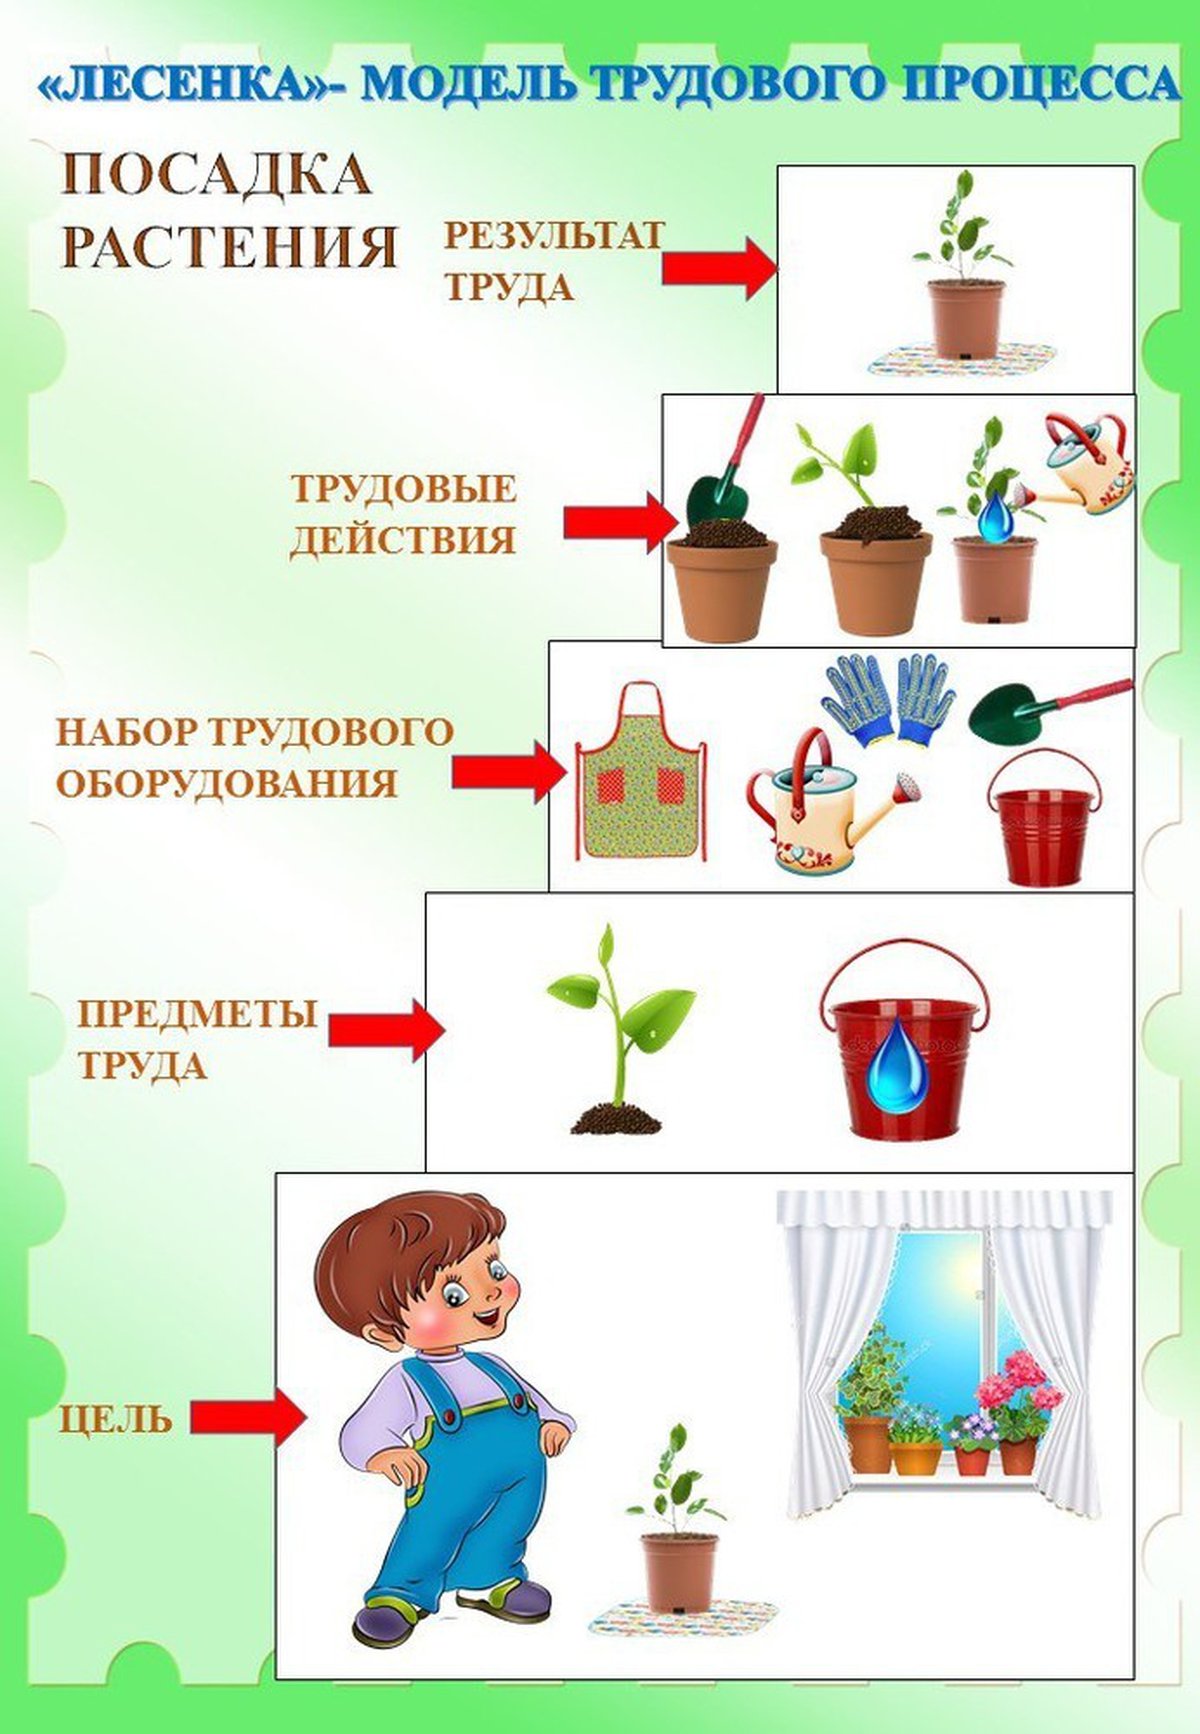 Алгоритм ухаживания за растениями в детском саду